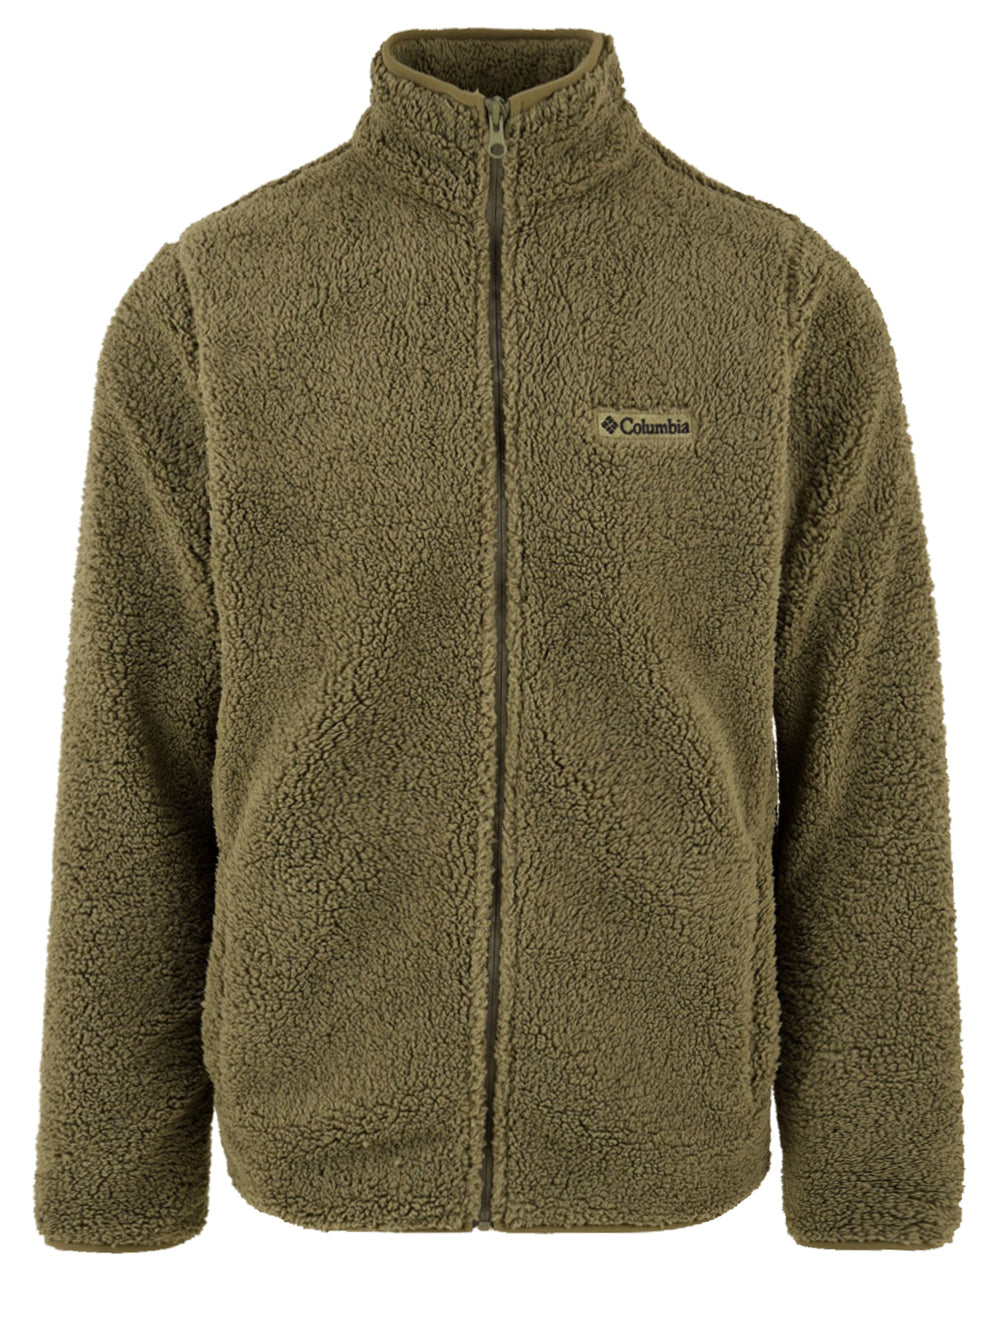 Immagine frontale della giacca da uomo in verde firmata Columbia. Presenta una chiusura con zip,collo alto e tasche laterali.